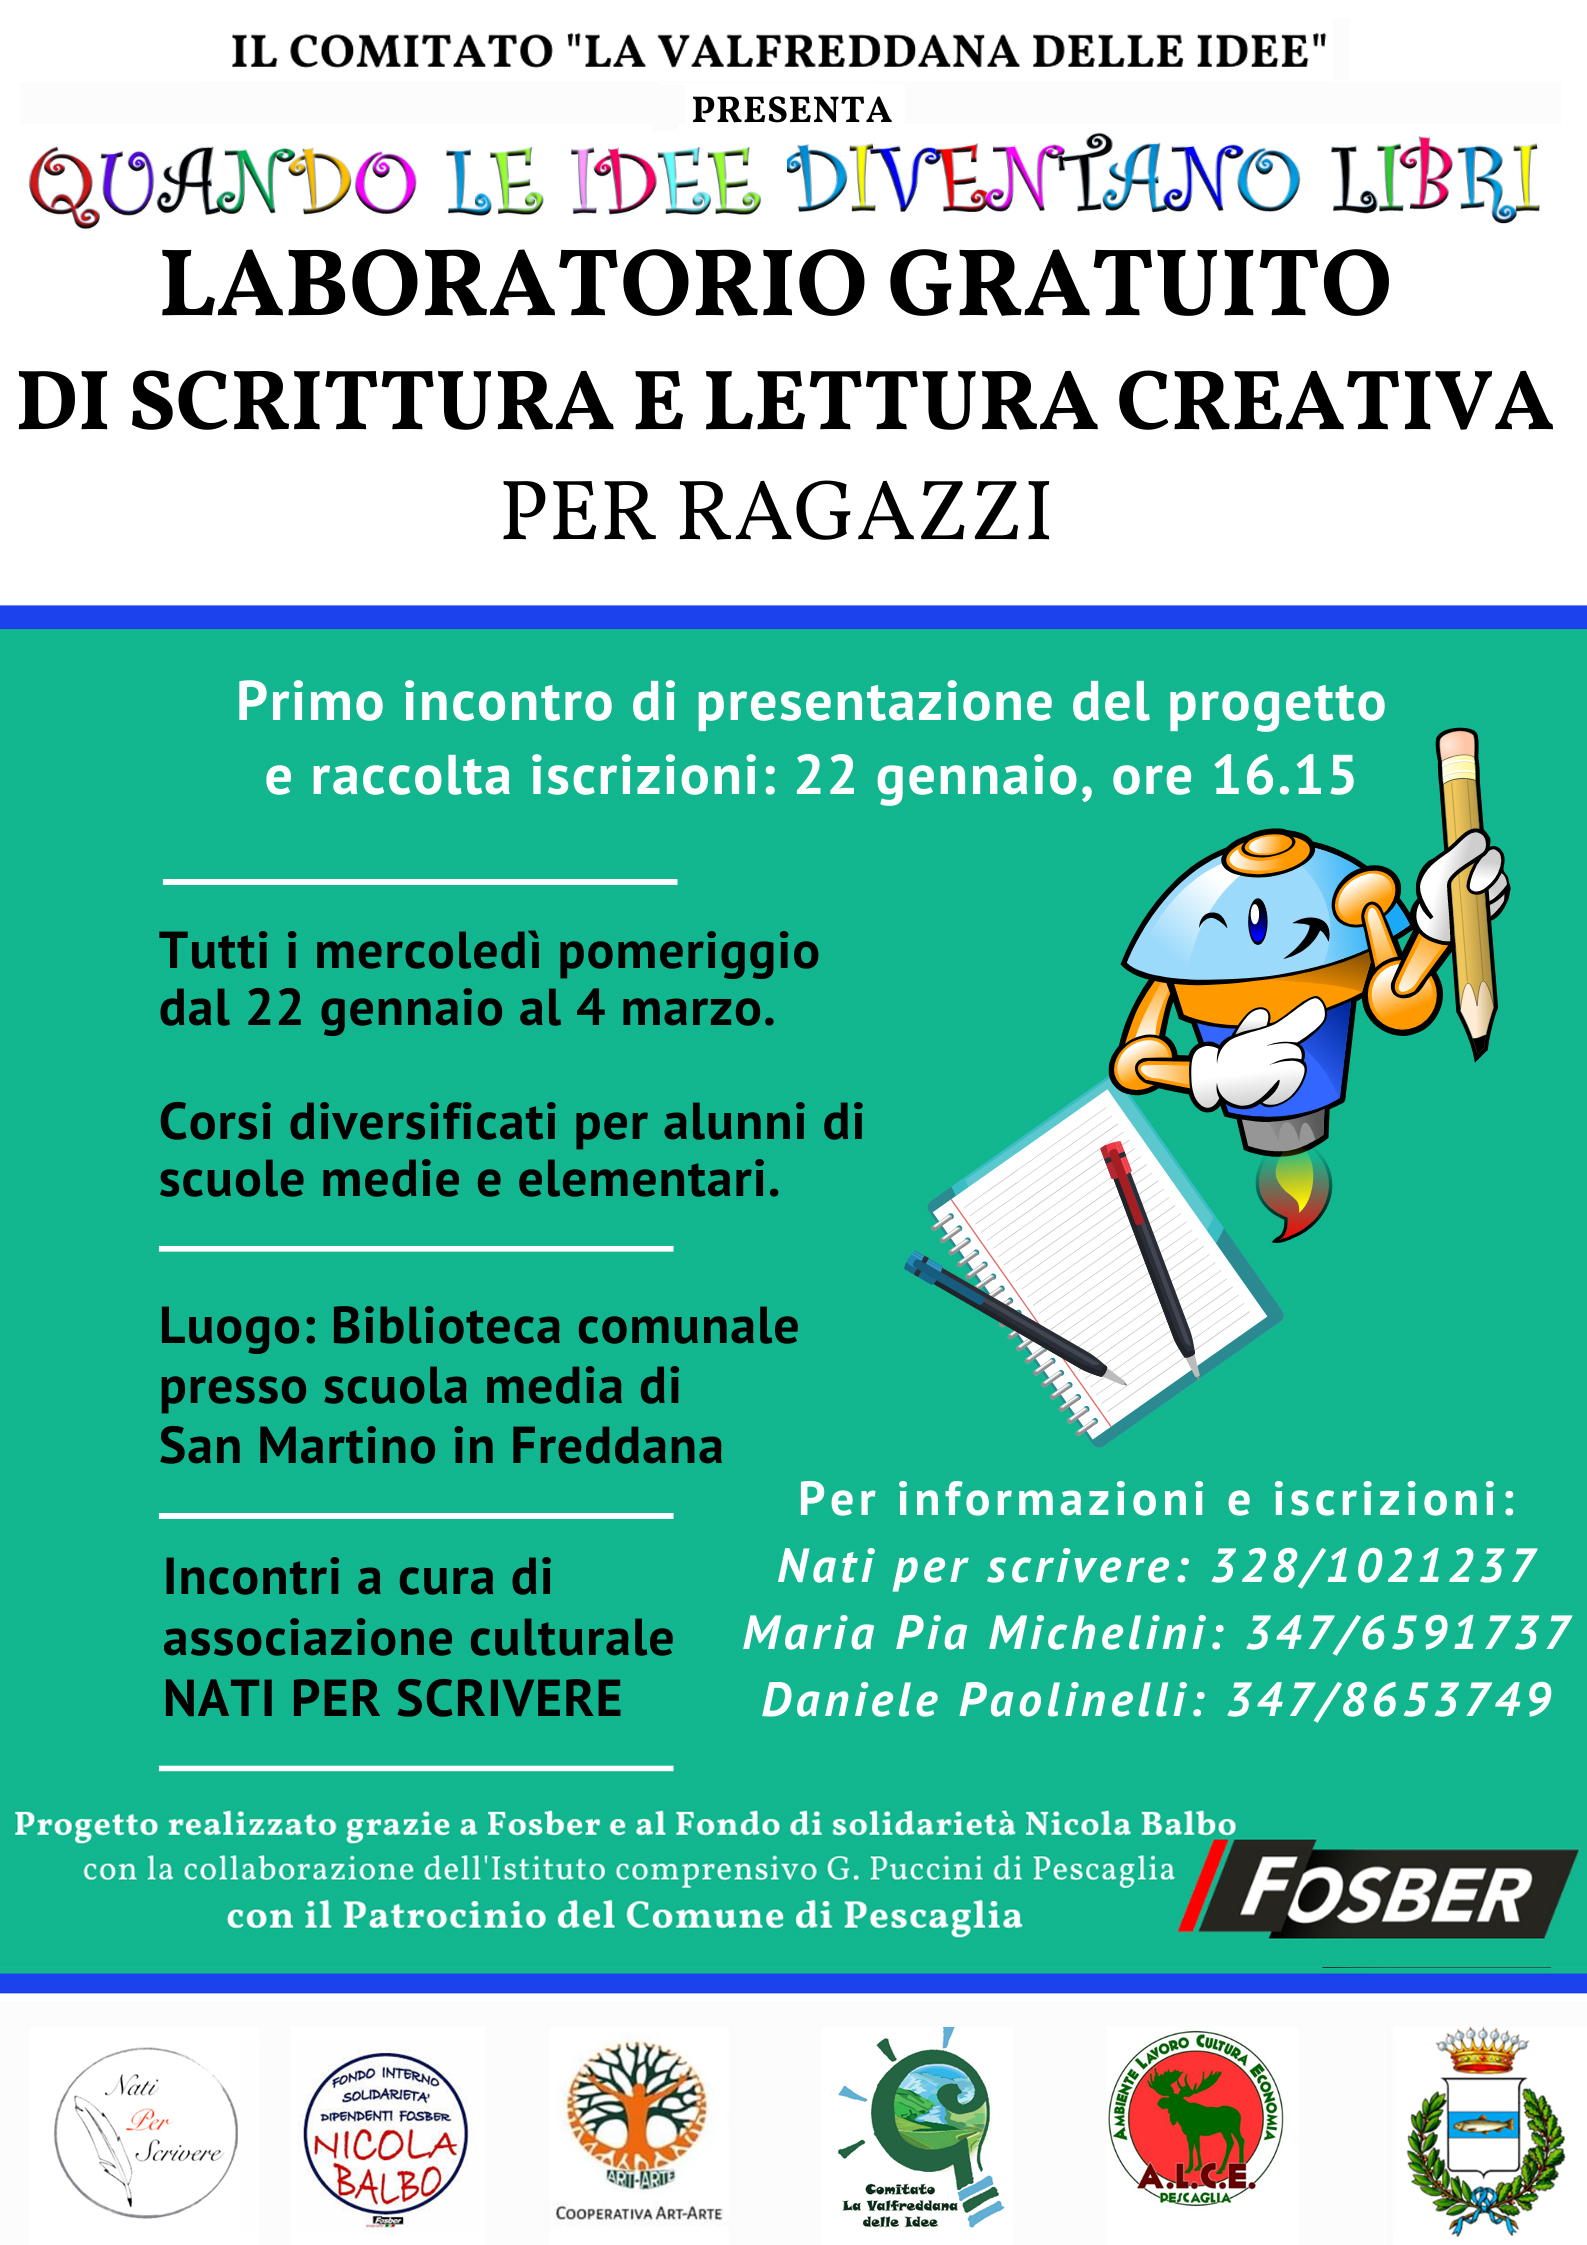 Foto 1 - Laboratori gratuiti di scrittura e lettura creativa a Lucca